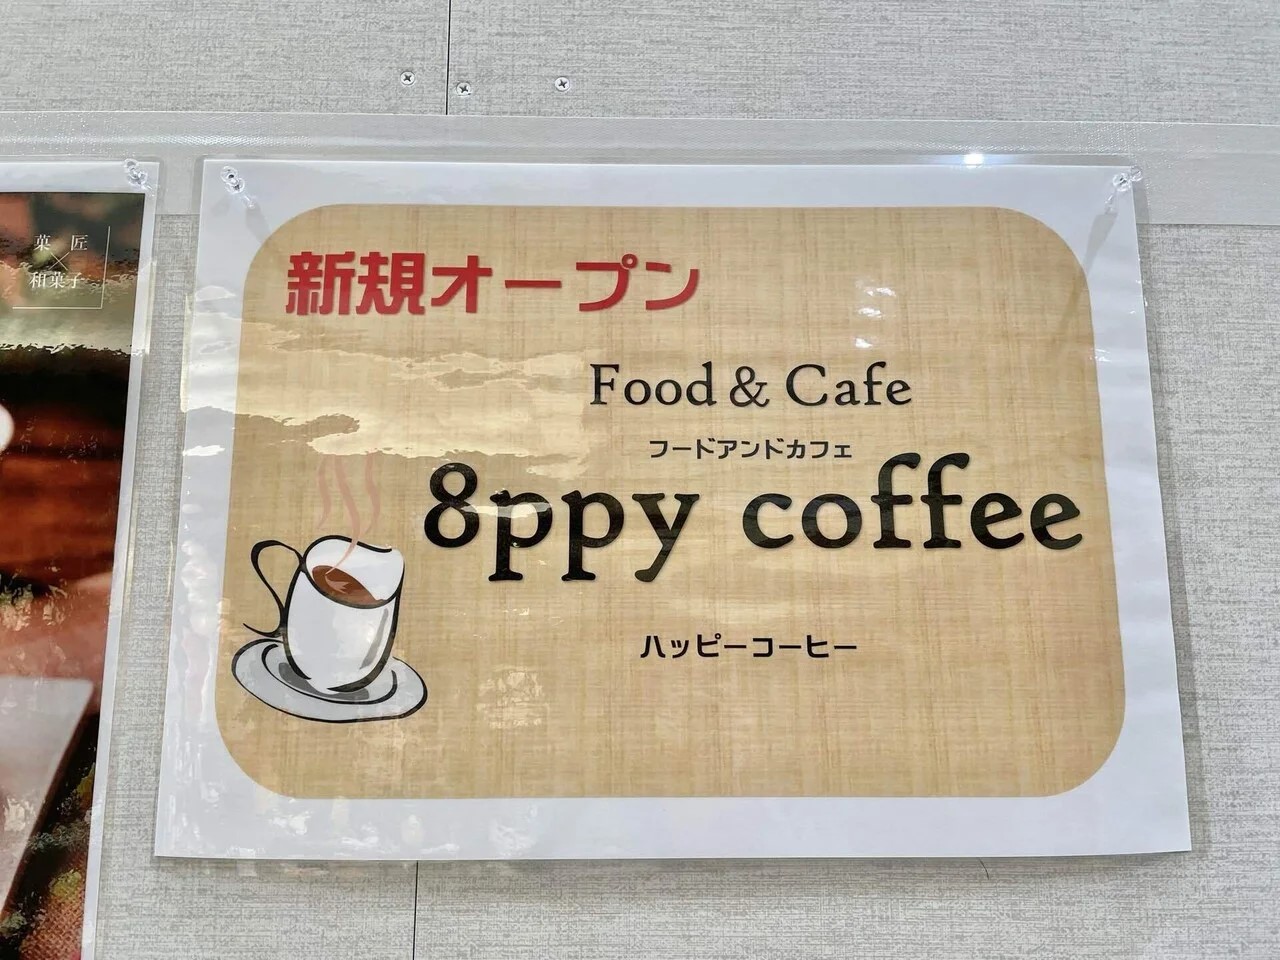 新規オープン8ppycoffee